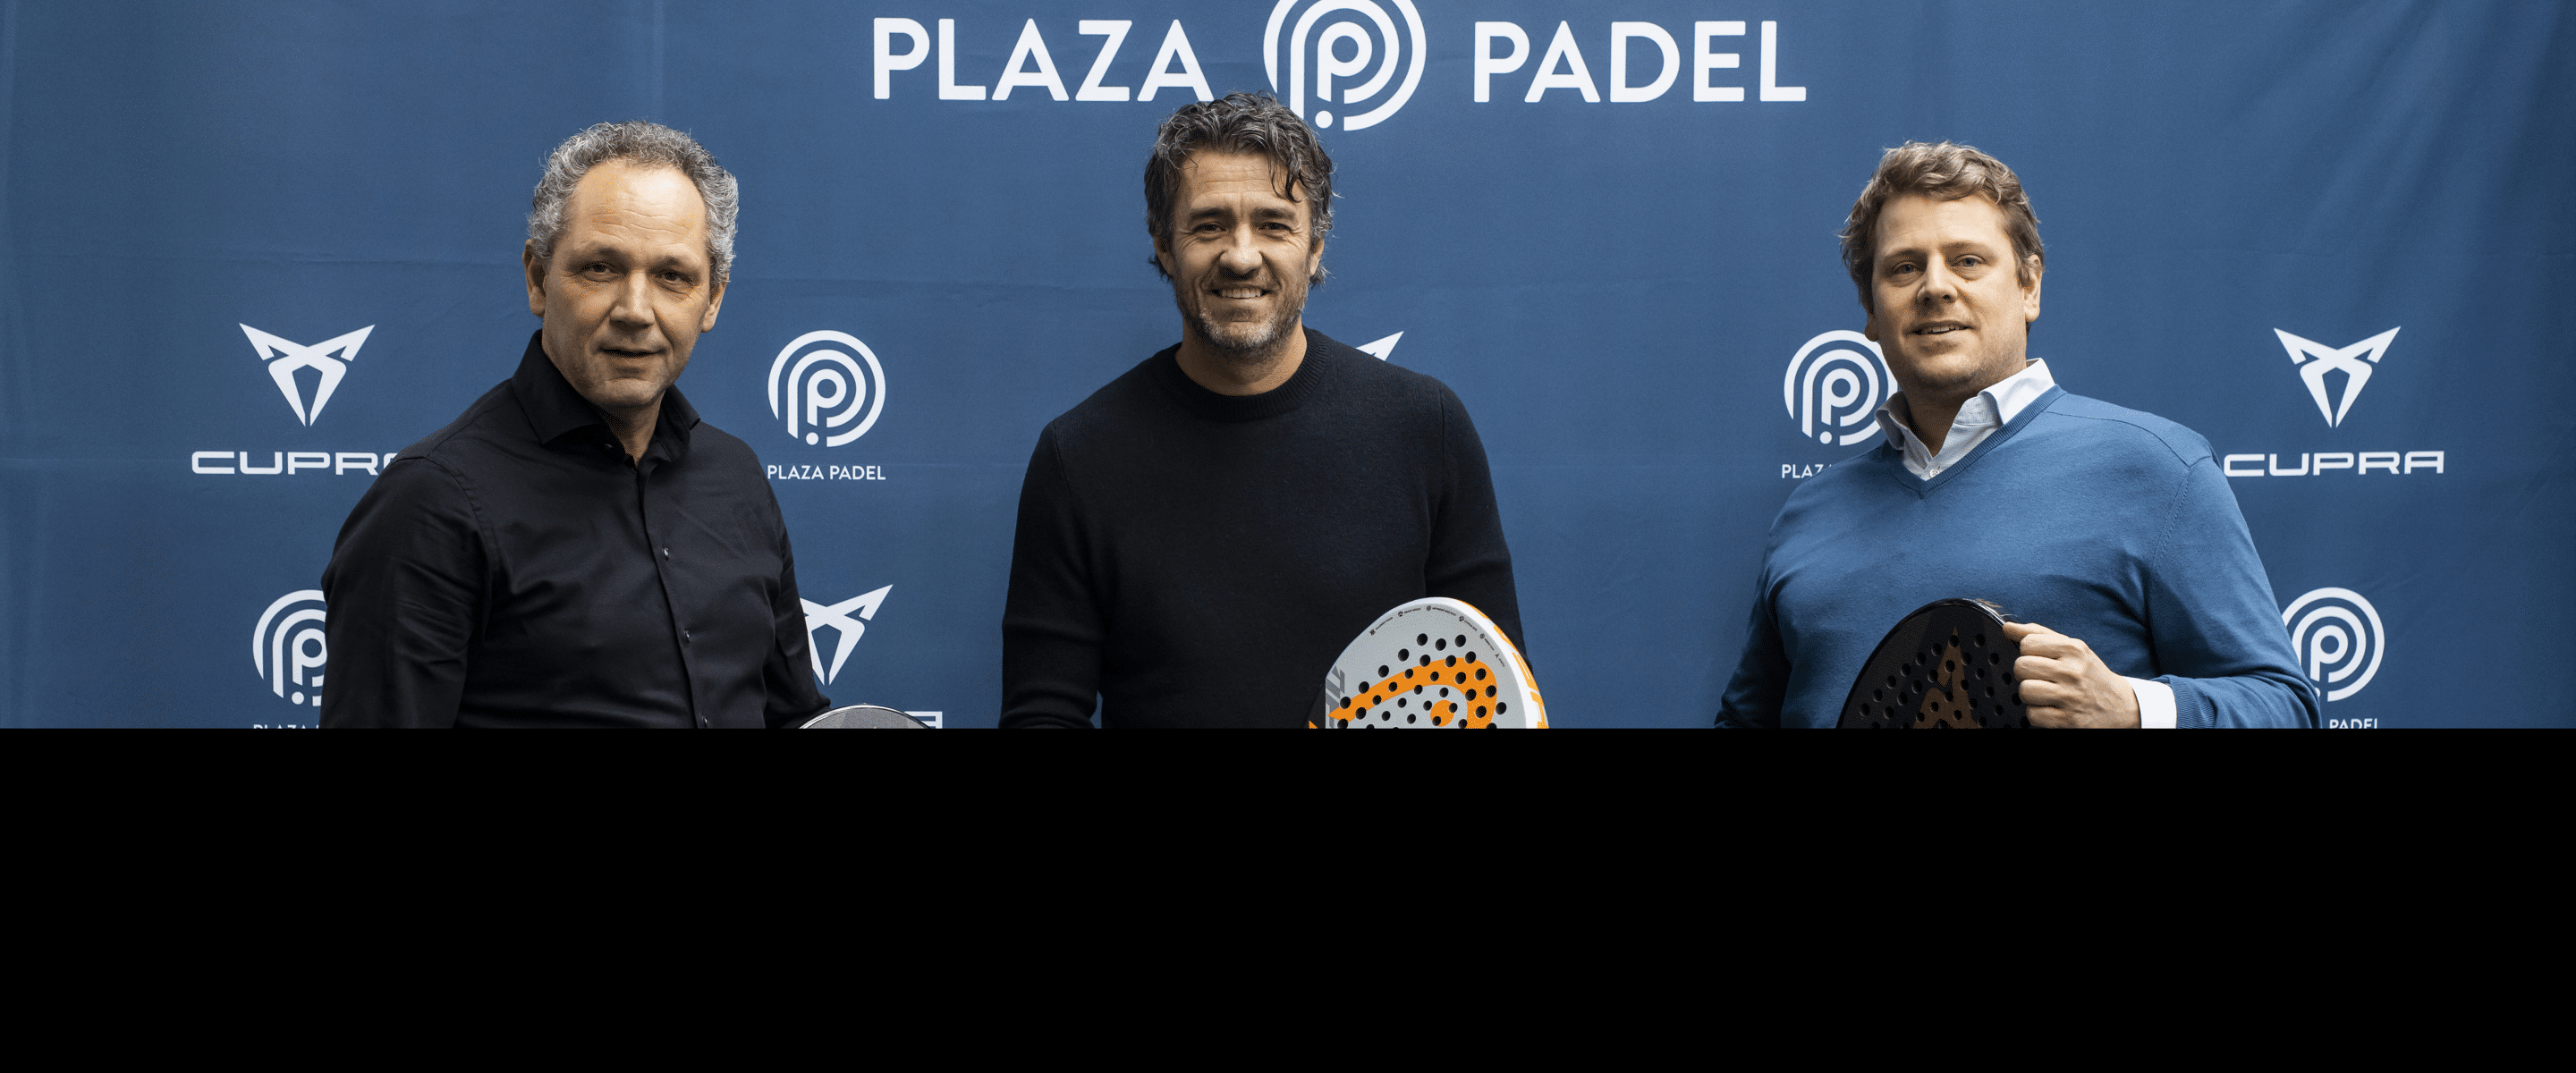 Play to Meet: Plaza Padel en CUPRA langer partners